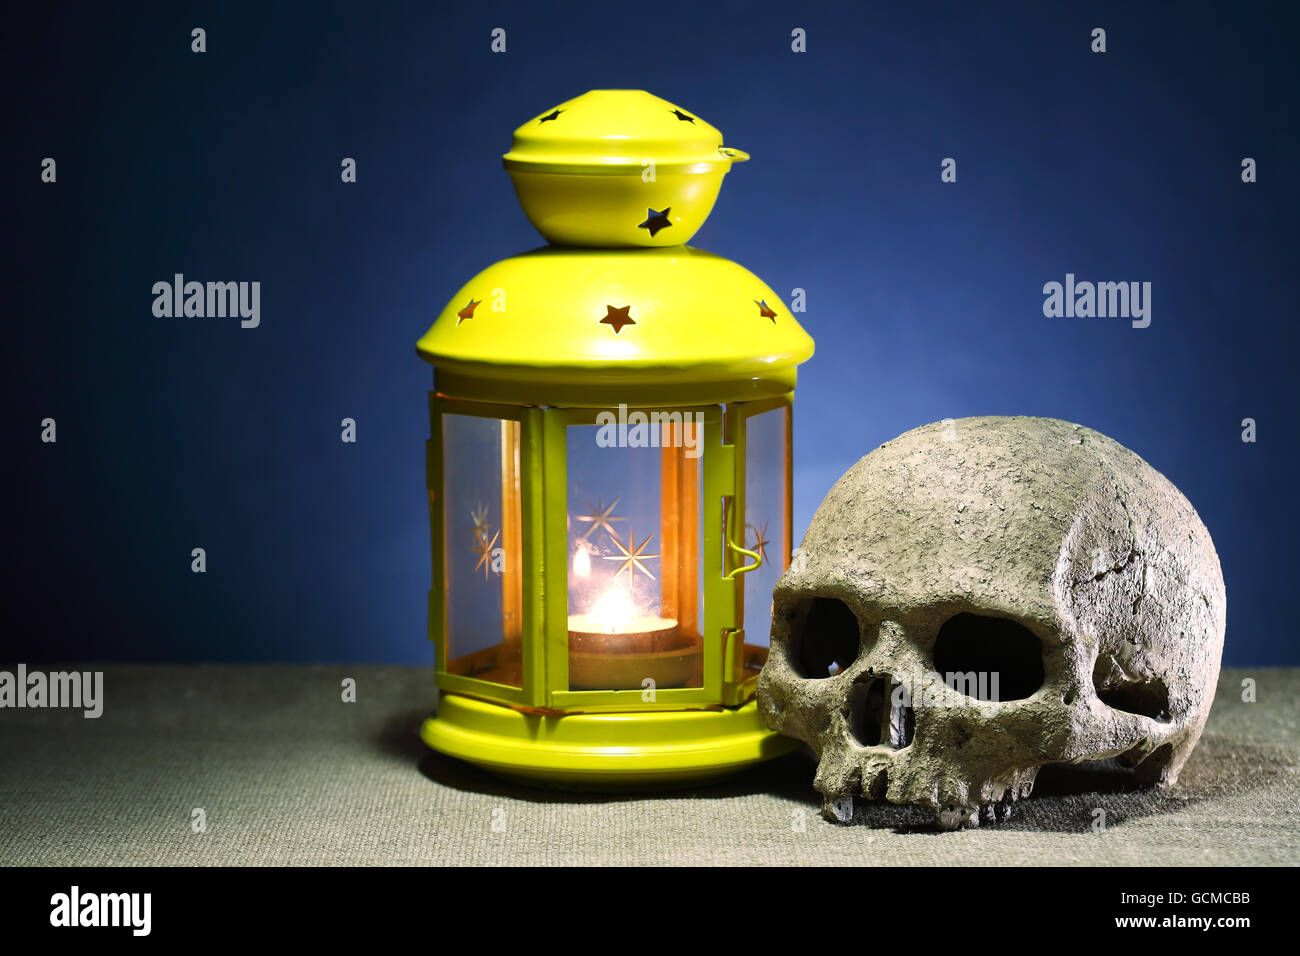 Concept de la mort. Un crâne humain près de lanterne d'éclairage sur fond sombre Banque D'Images